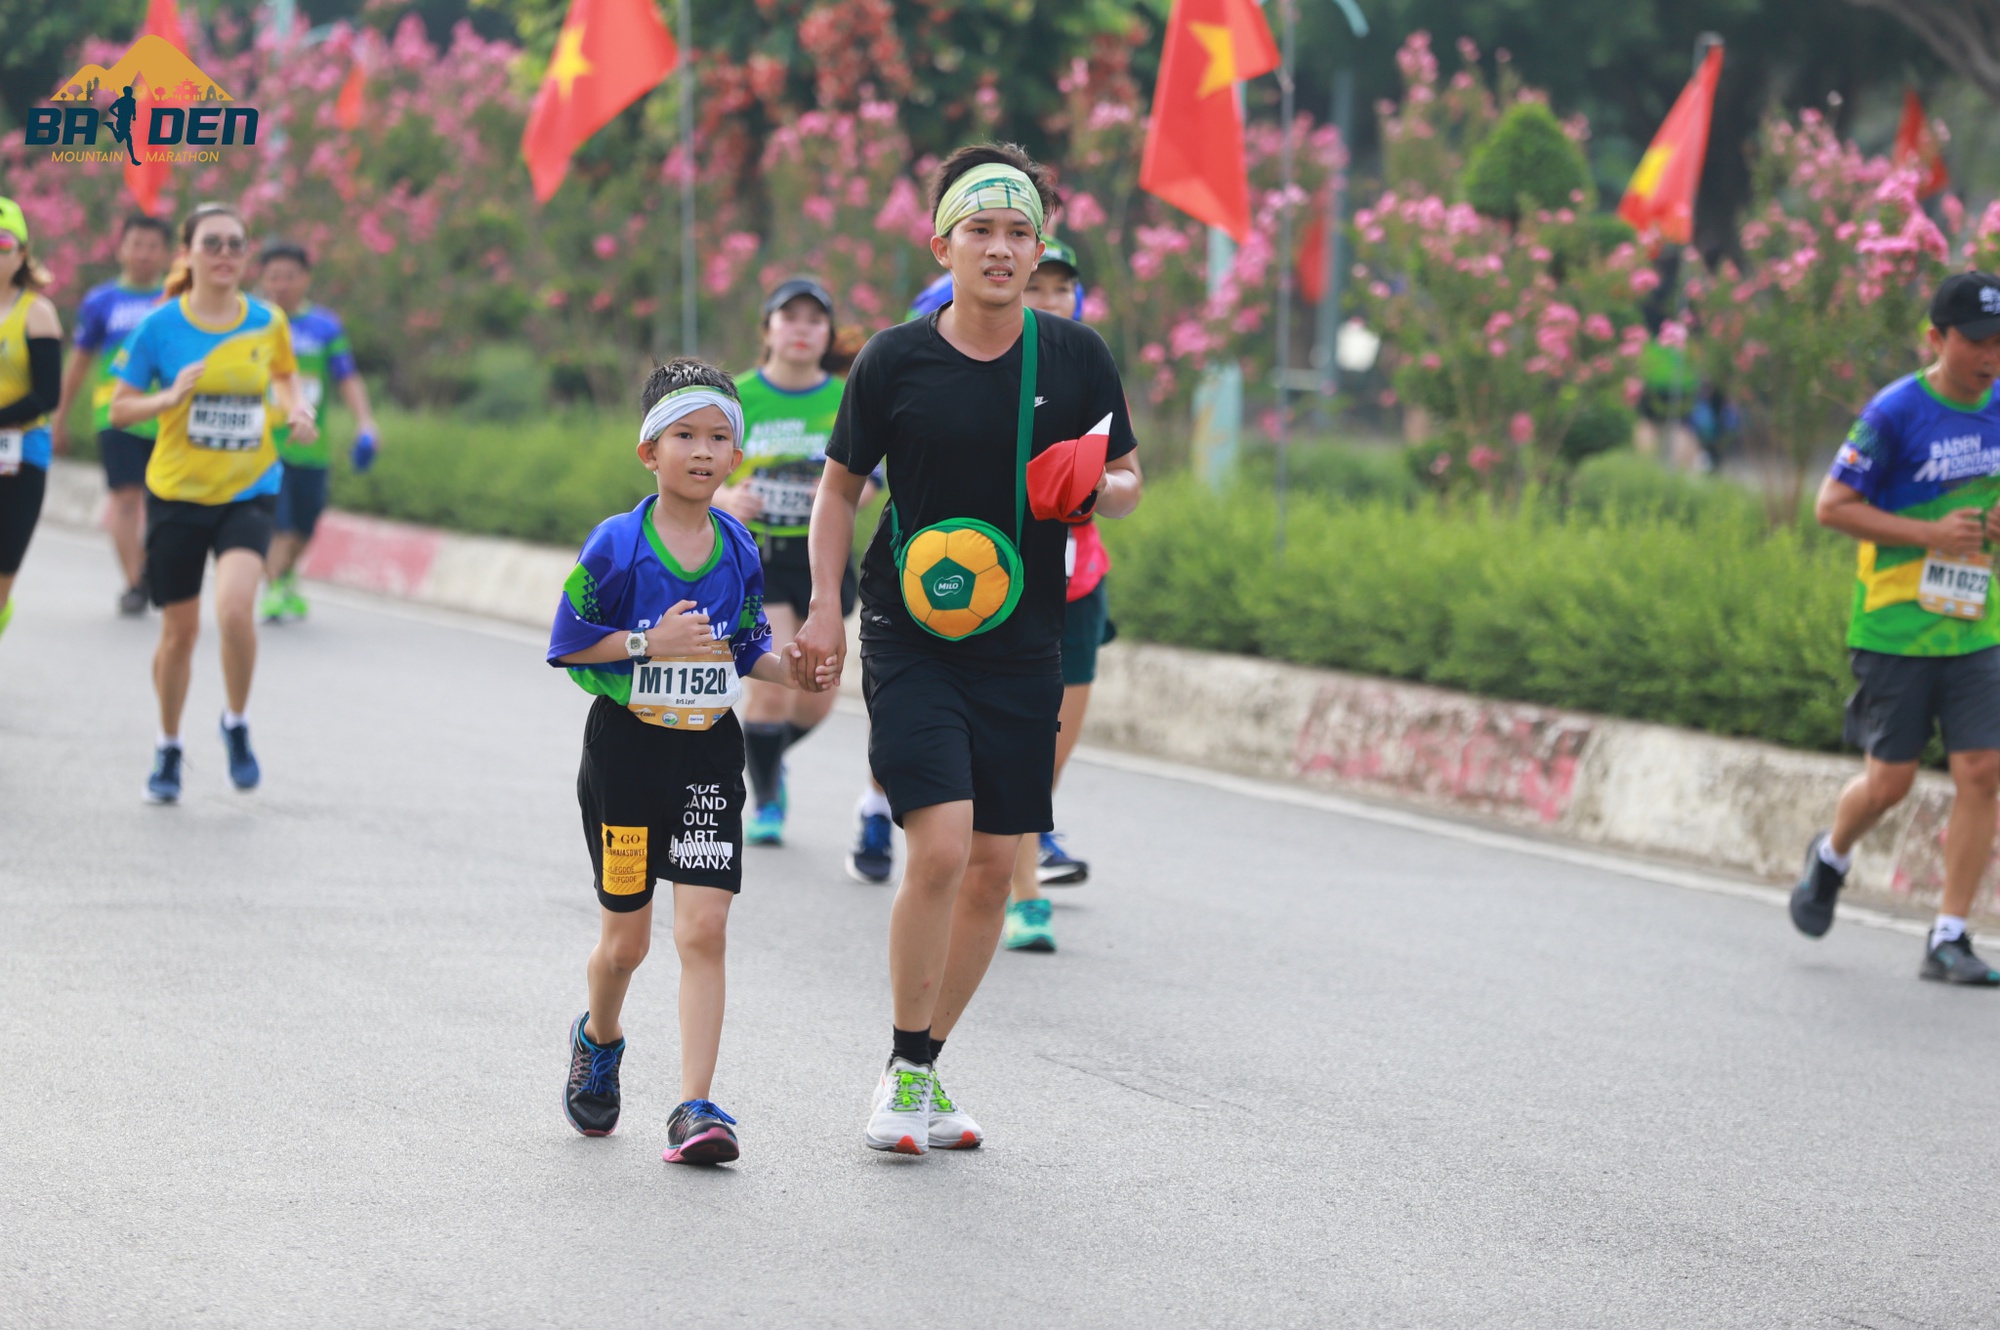 Muôn kiểu cosplay lạ mắt chỉ có ở đường chạy marathon Tây Ninh - Ảnh 5.